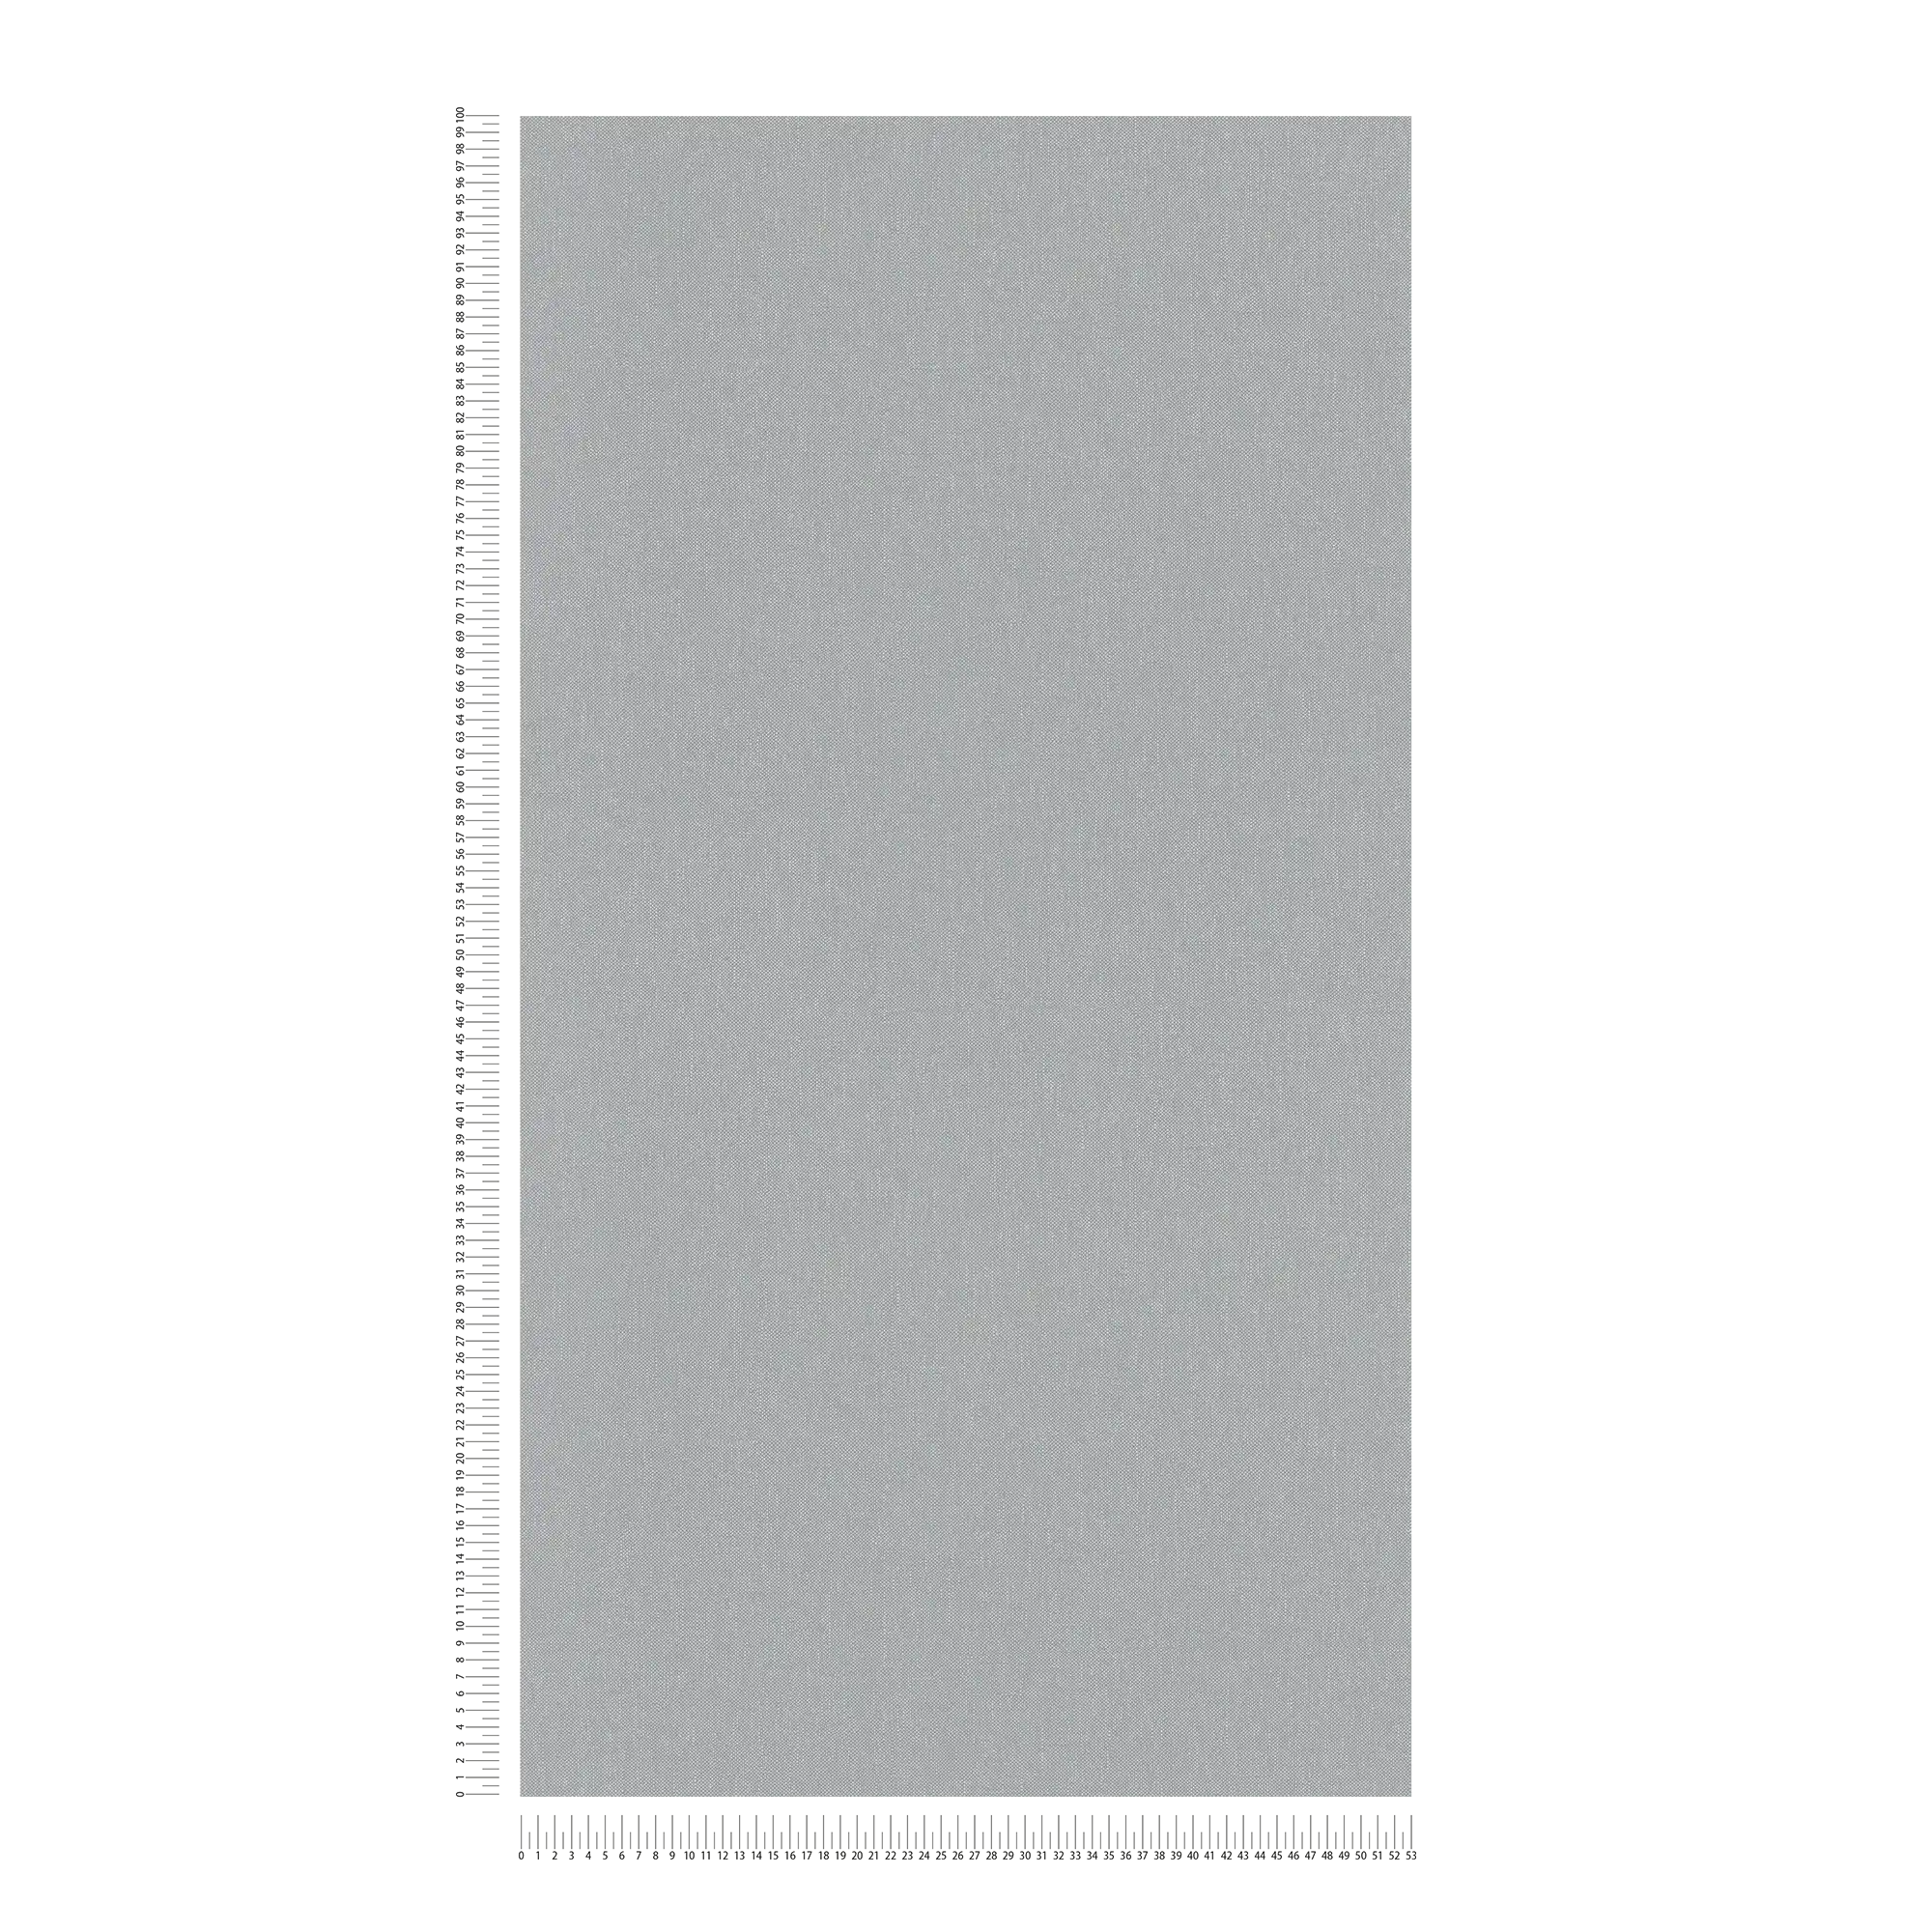             Carta da parati in lino grigio con disegno a struttura in stile country
        